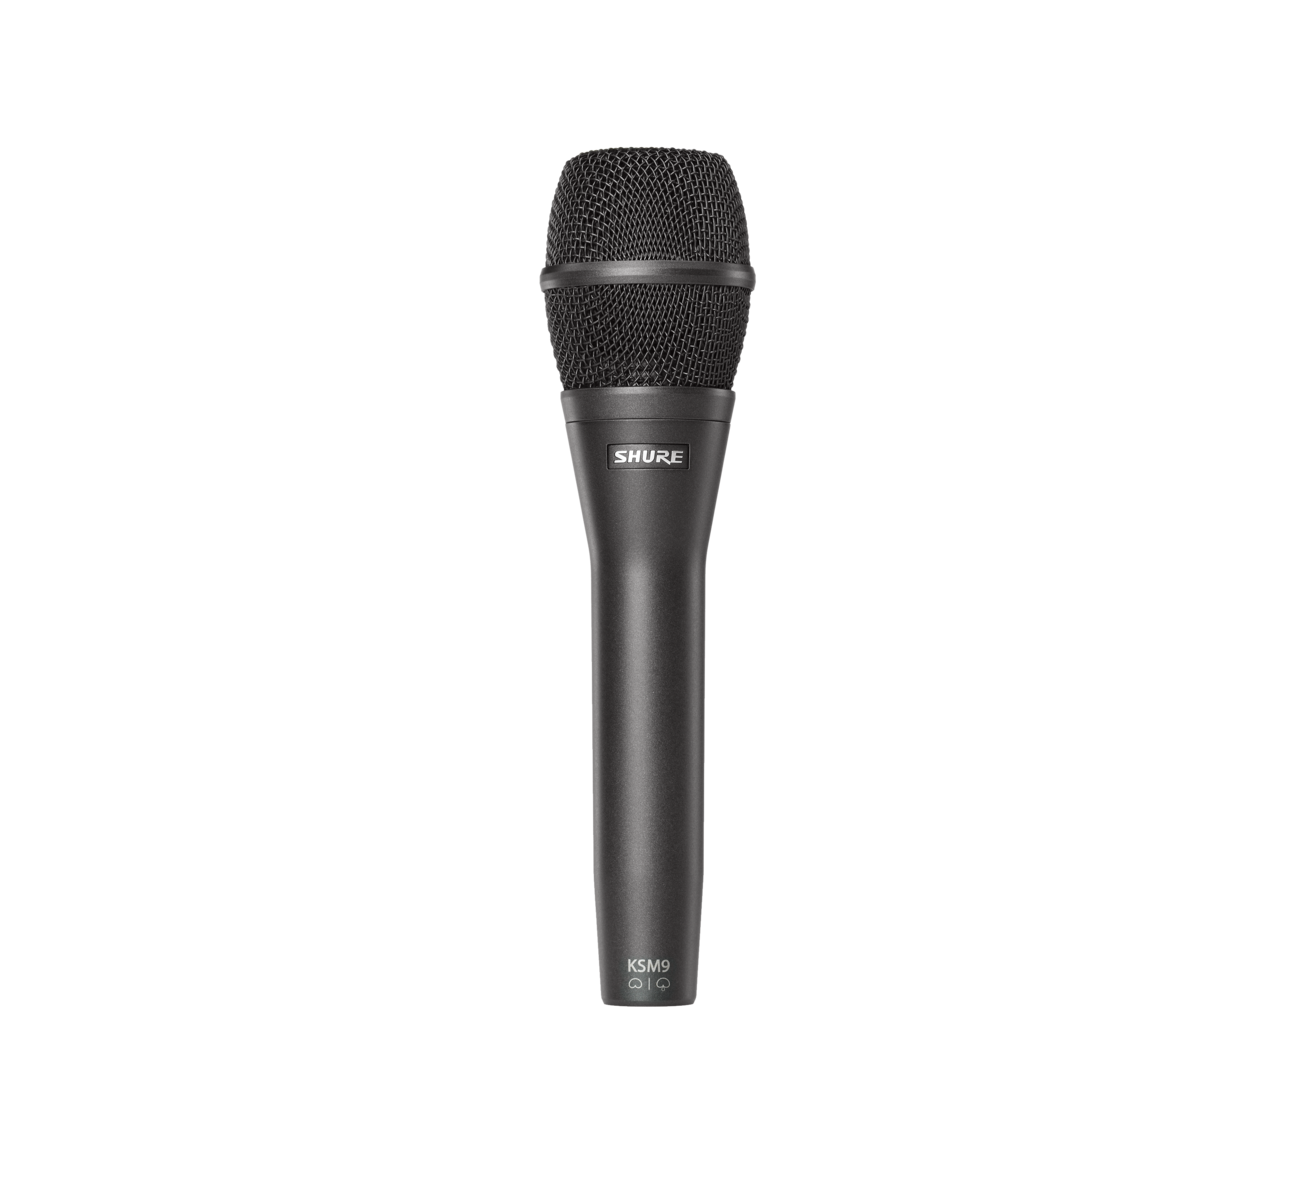 SHURE KSM9/CG Вокальный конденсаторный микрофон с двойной диафрагмой переключаемая кардиоида/суперкардиоида, 50-20000 Гц, 2,8 мВ/Па, Max.SPL 152 дБ, предусилителя класса А. Черный